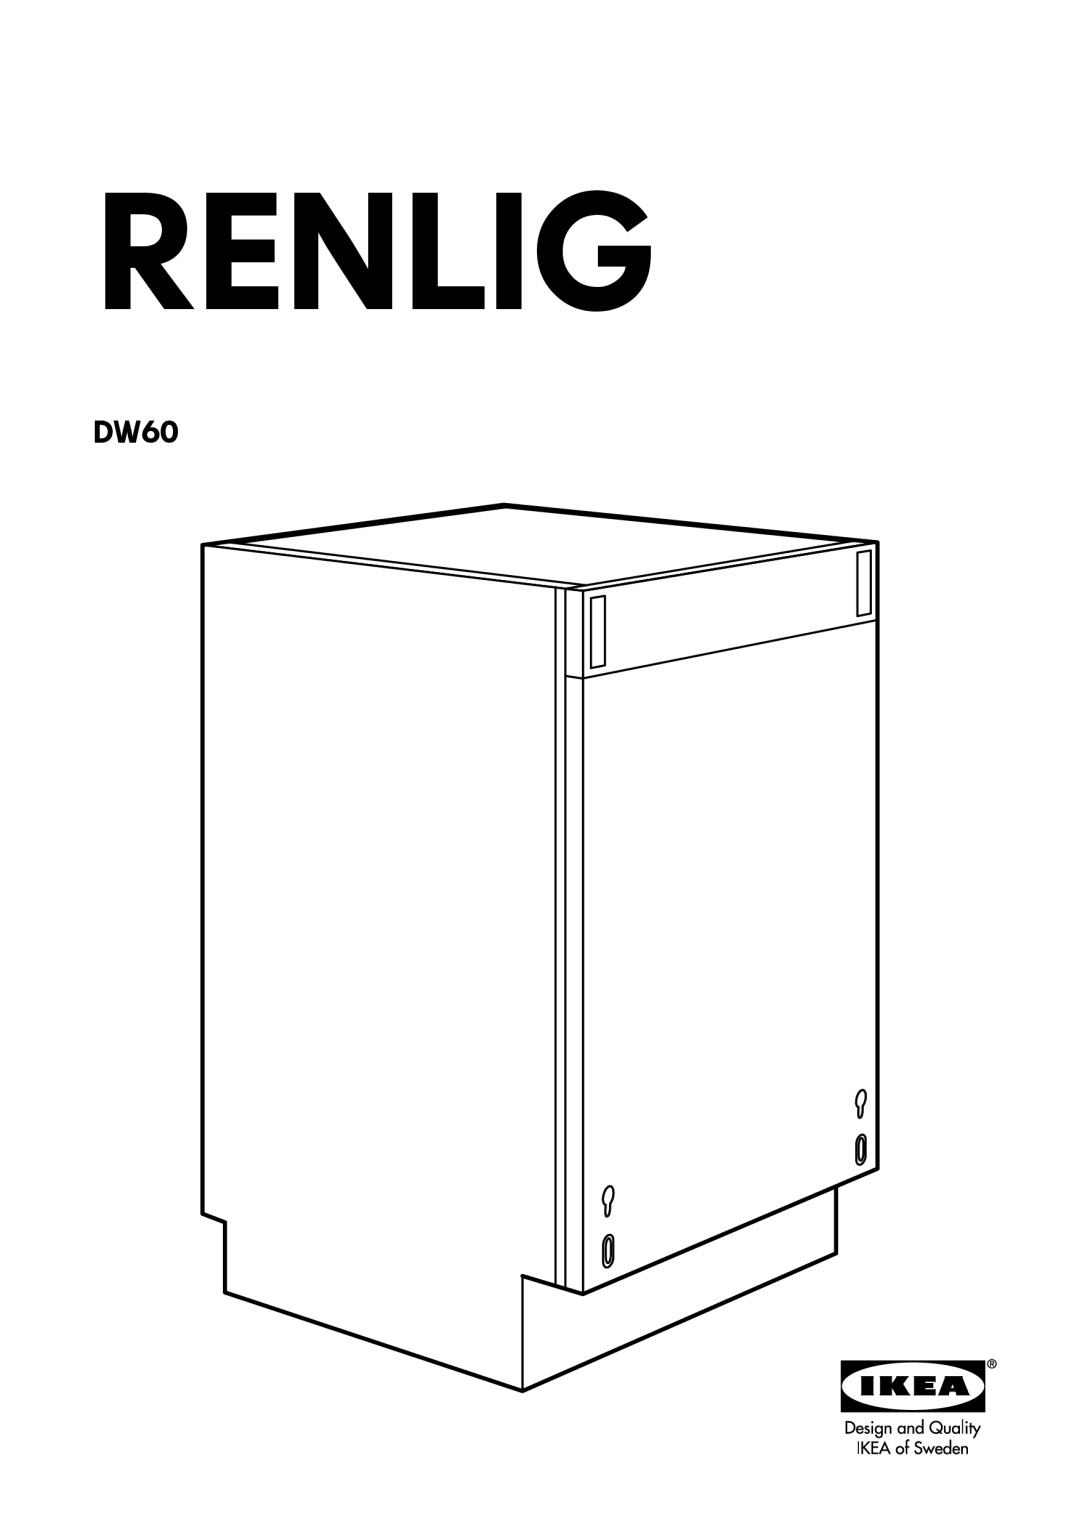 IKEA DW60 manual Renlig 